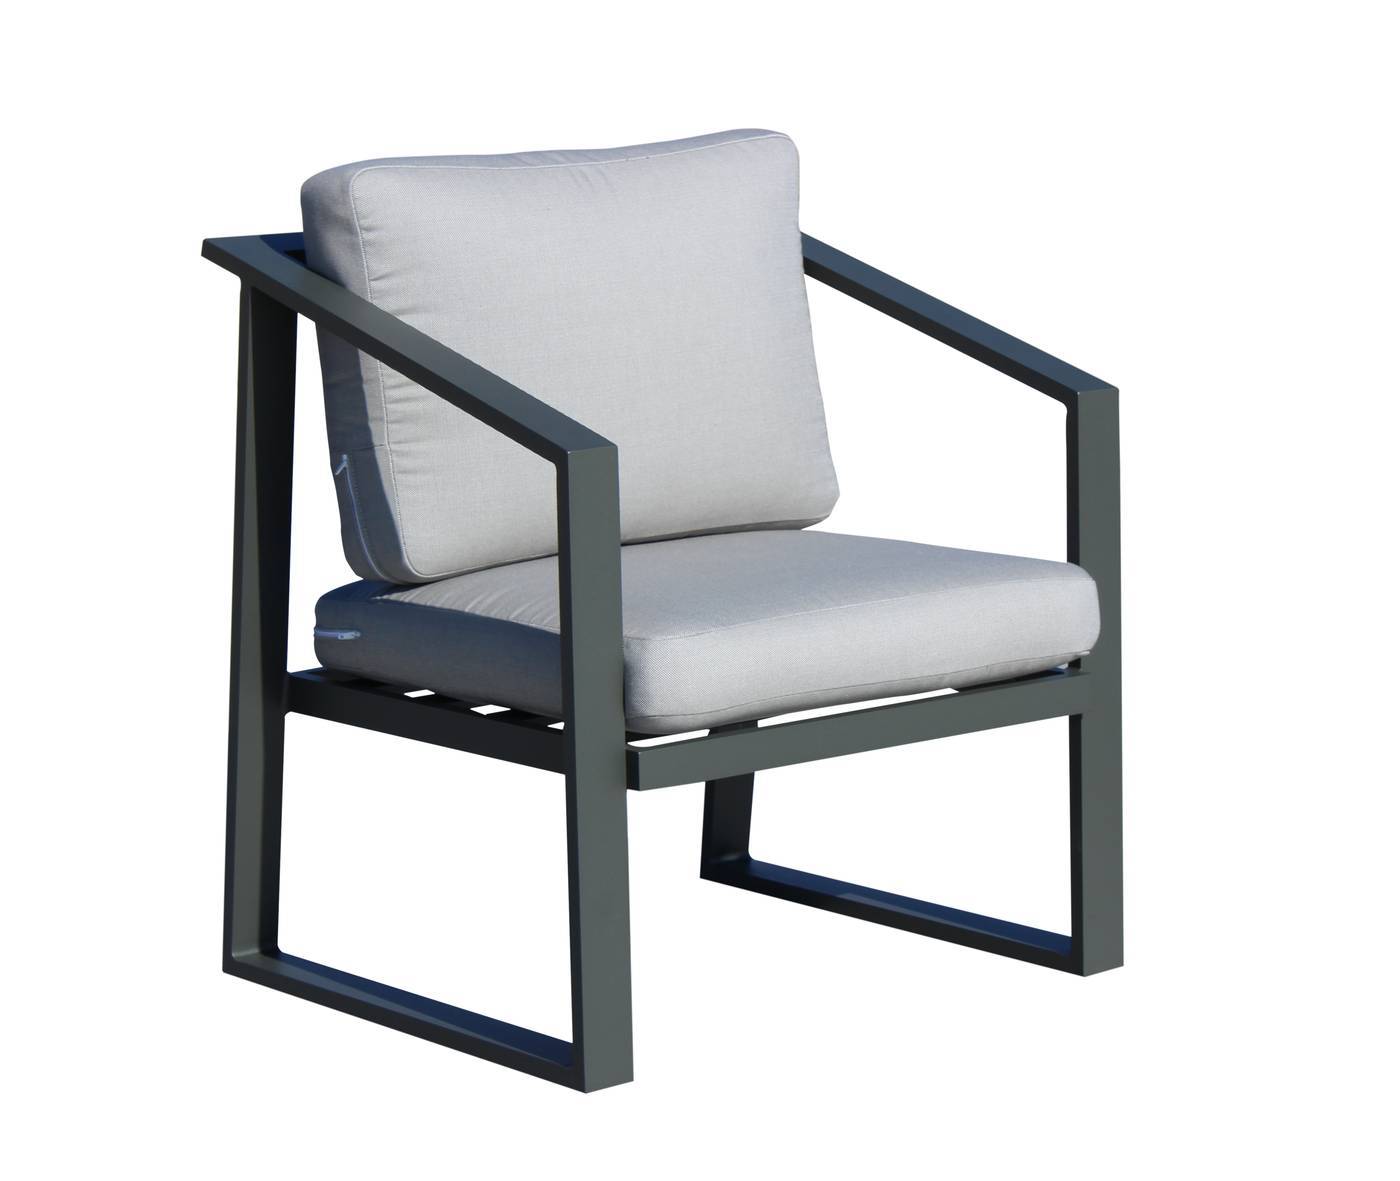 Set Aluminio Sadem-9 - Conjunto aluminio para exterior: sofá 2 plazas + 2 sillones + mesa de centro + 2 taburetes. Fabricado de aluminio en color blanco o antracita.